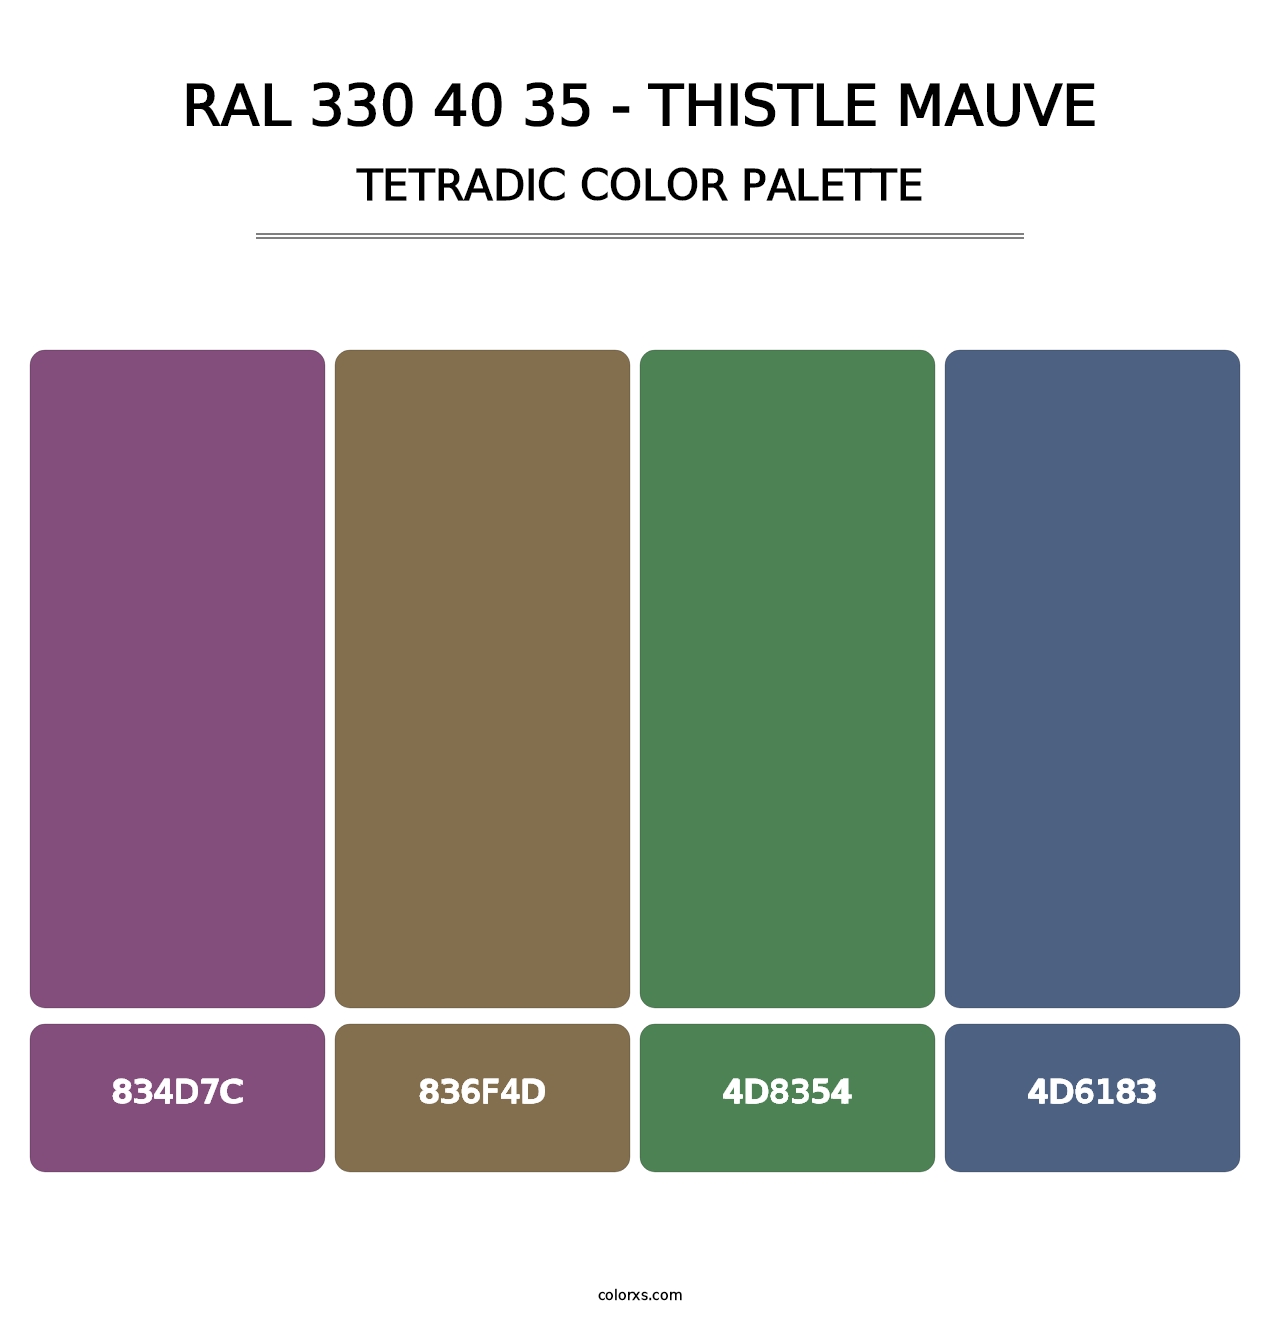 RAL 330 40 35 - Thistle Mauve - Tetradic Color Palette